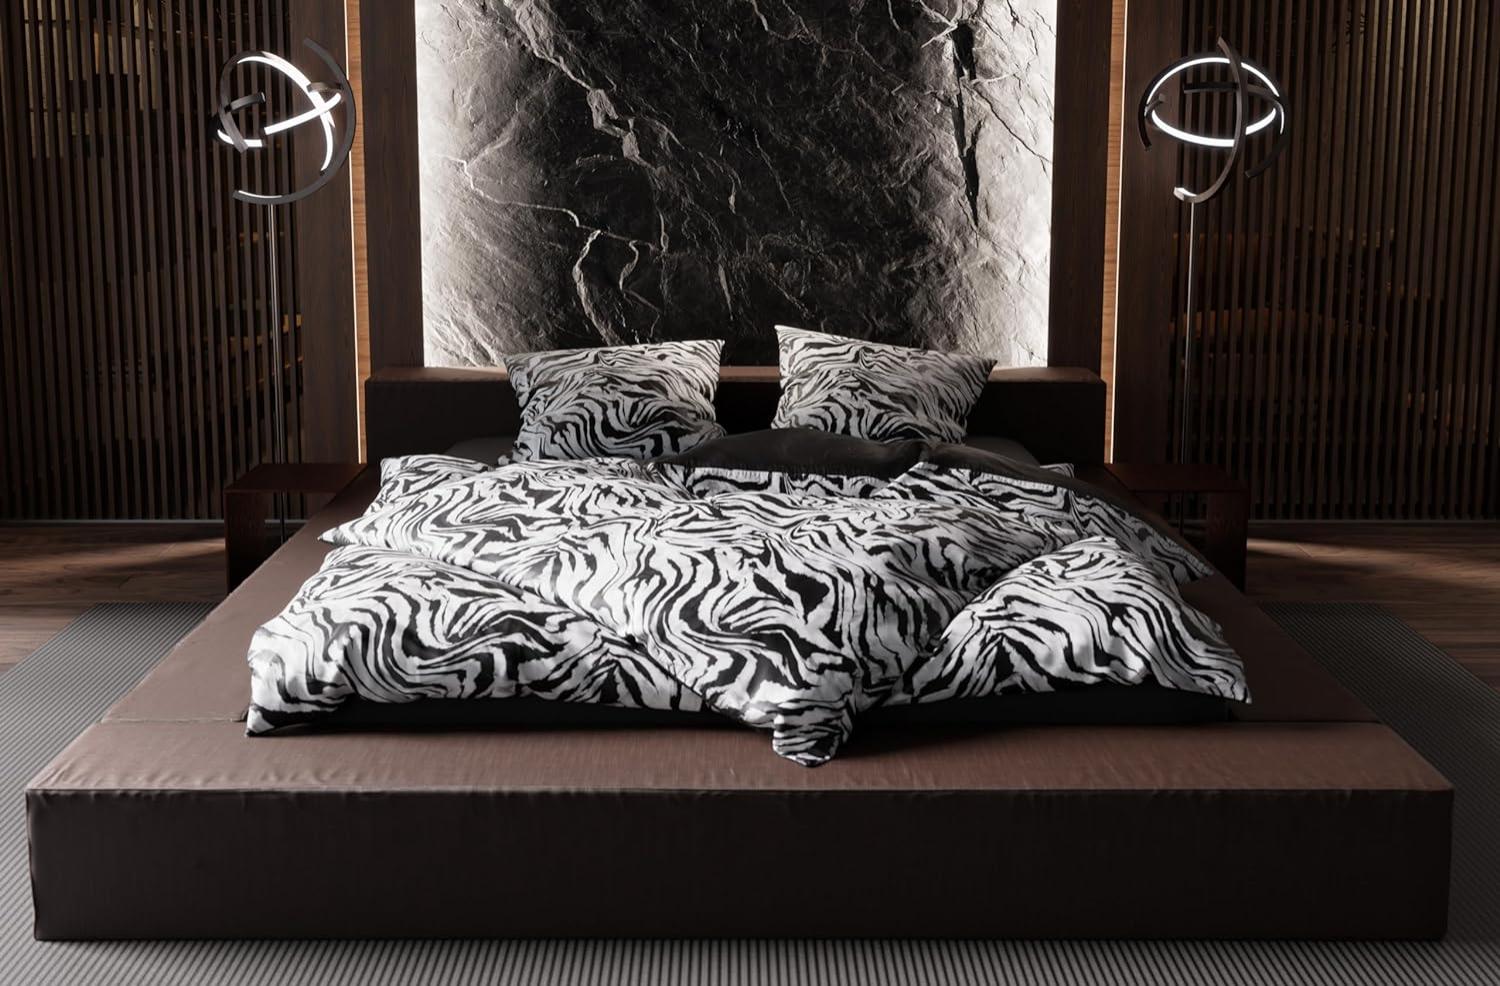 Moderne Mako Satin Wende Bettwäsche Zebra Muster schwarz weiß 200x220 + 2x 80x80 Bild 1